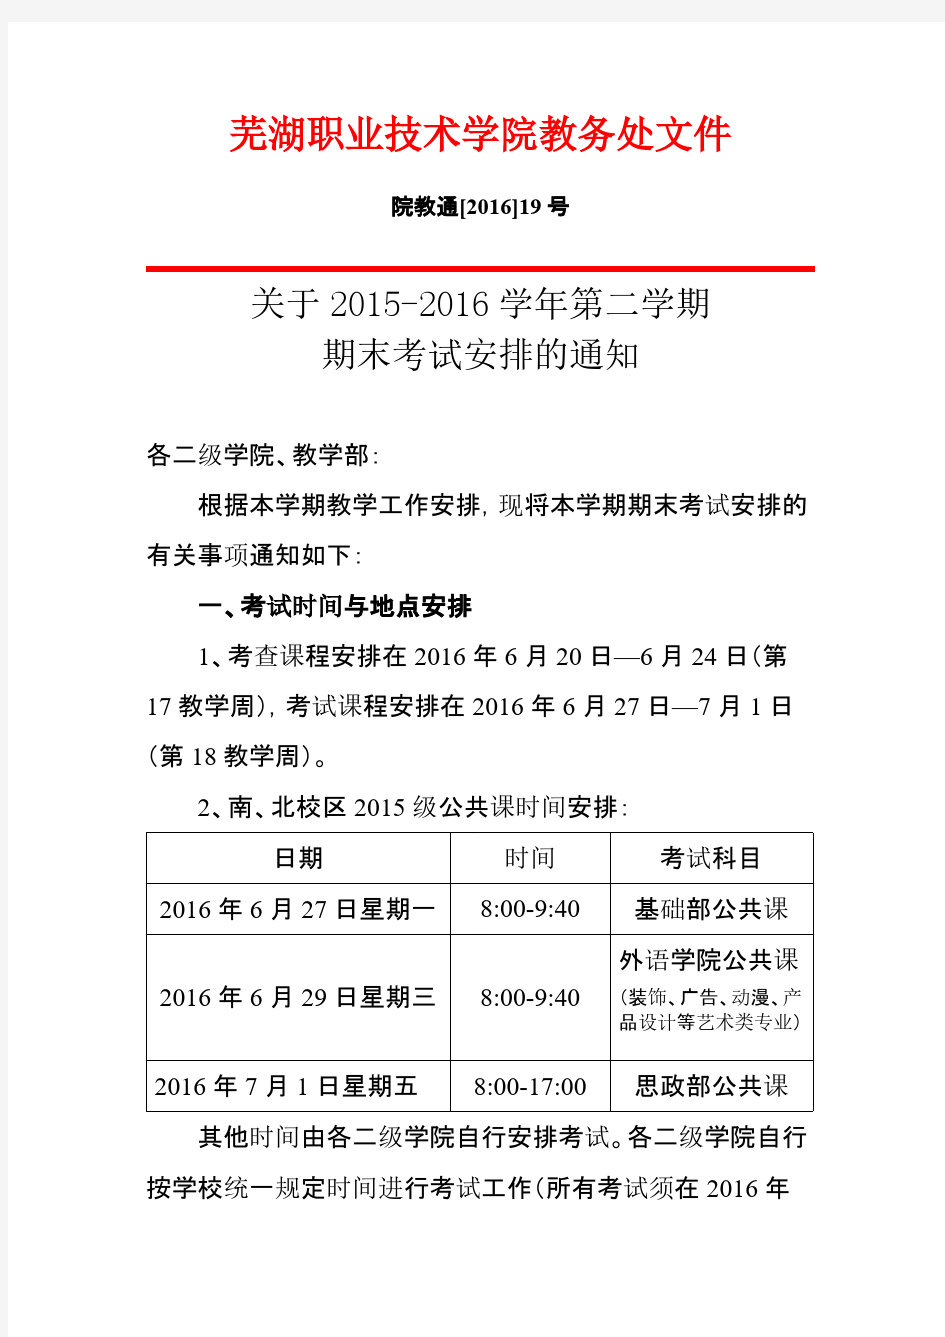 芜湖职业技术学院2015-2016第二学期期终考试安排通知